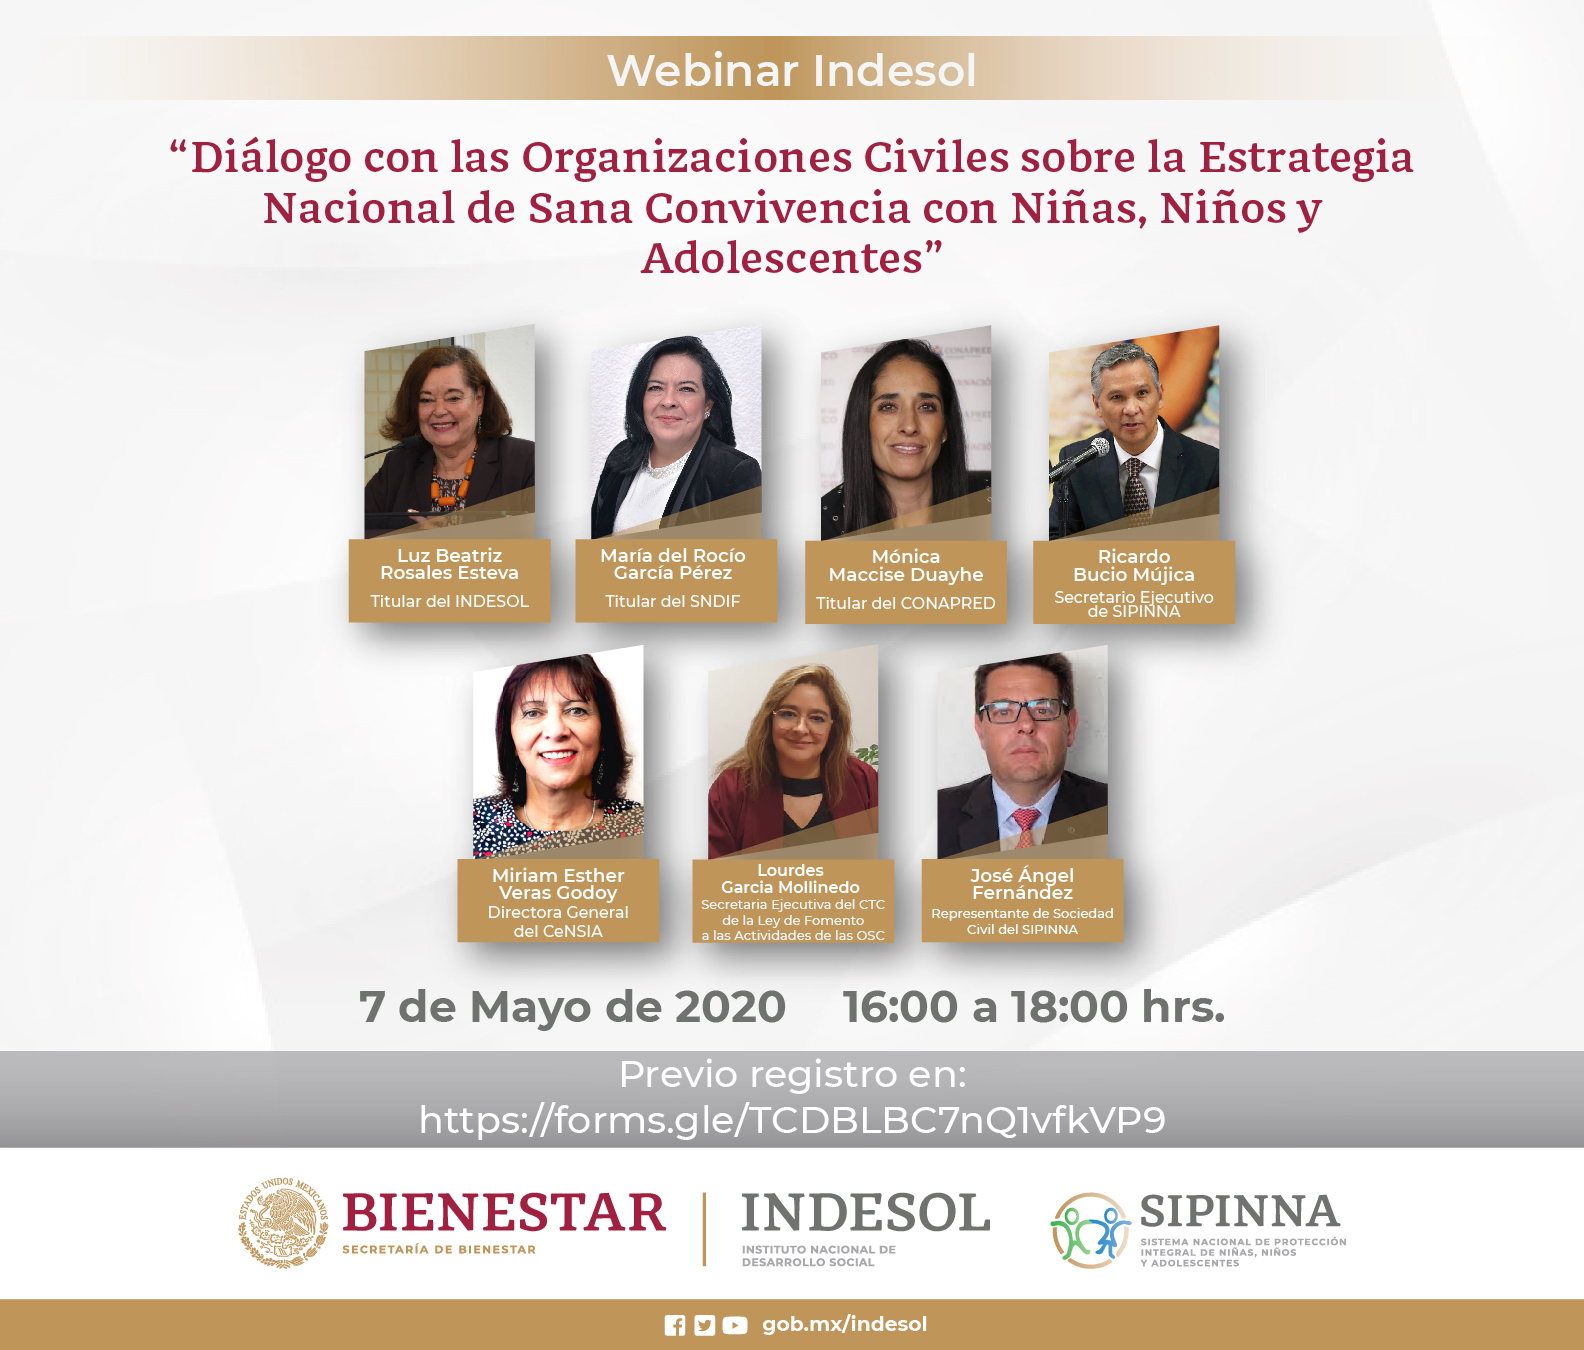 Banner Webinar Indesol: Diálogo con las Organizaciones Civiles sobre la Estrategia Nacional de Sana Convivencia con Niñas, Niños y Adolescentes.